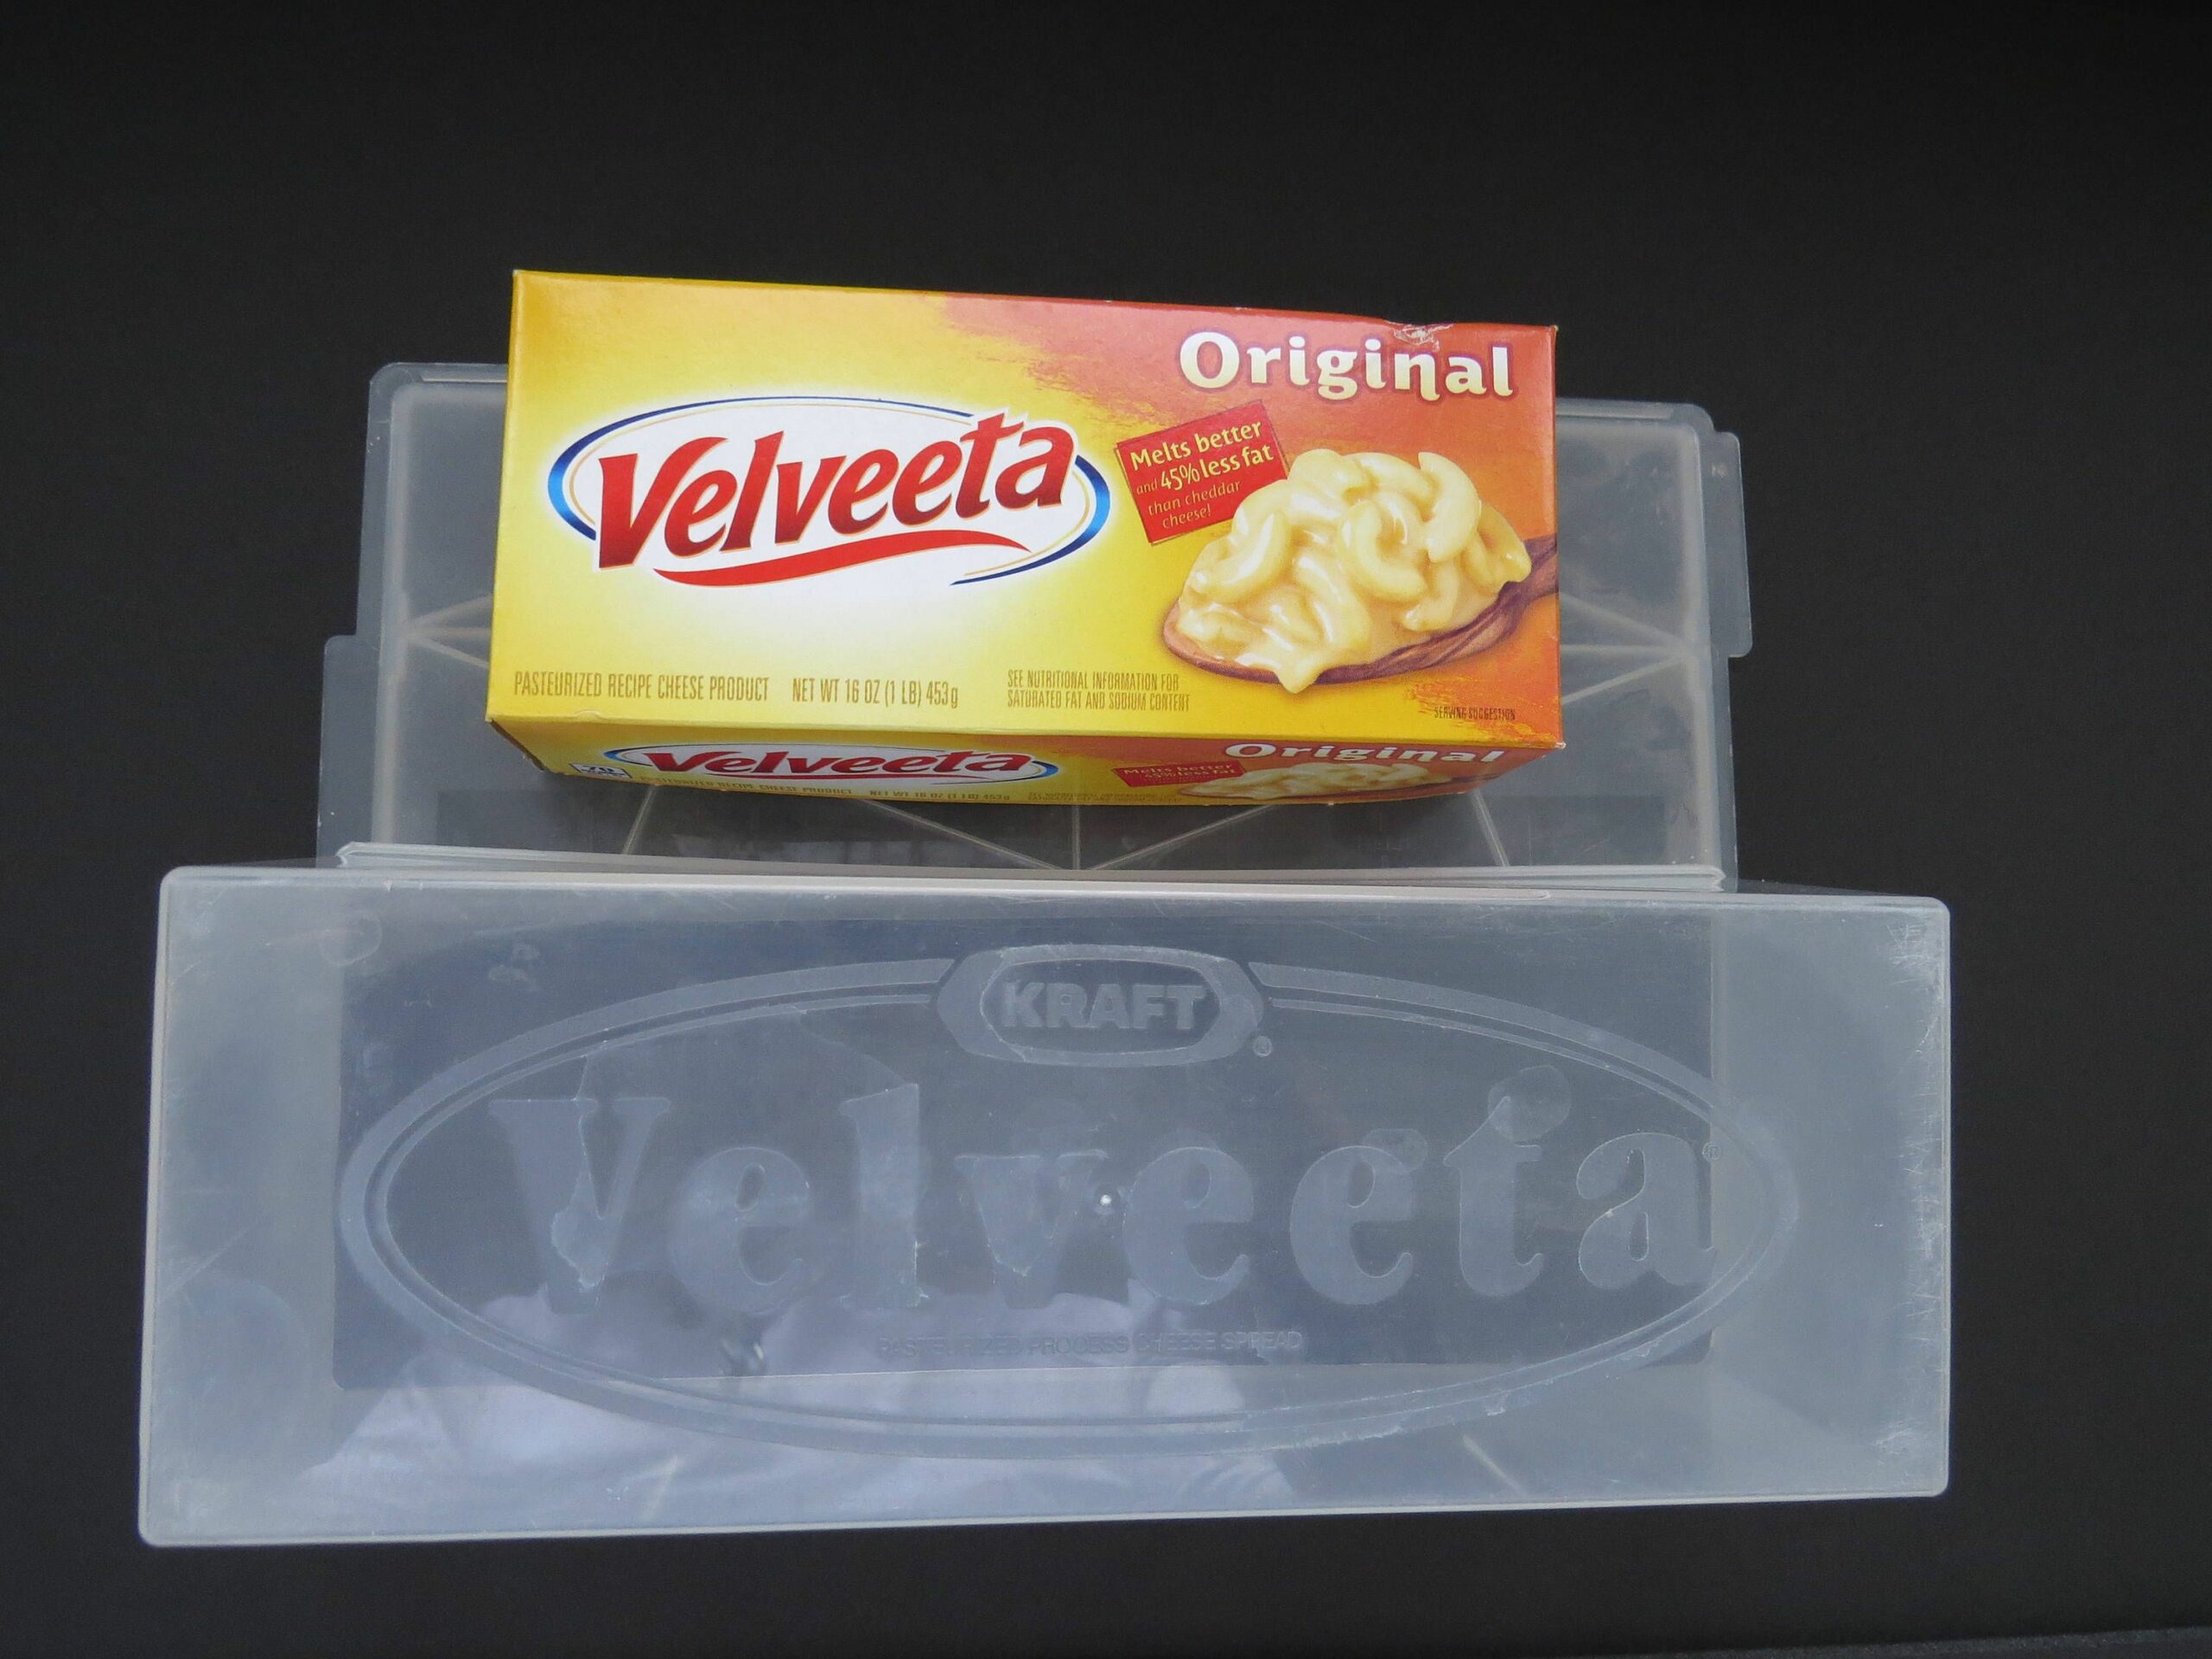 How to store Velveeta cheese